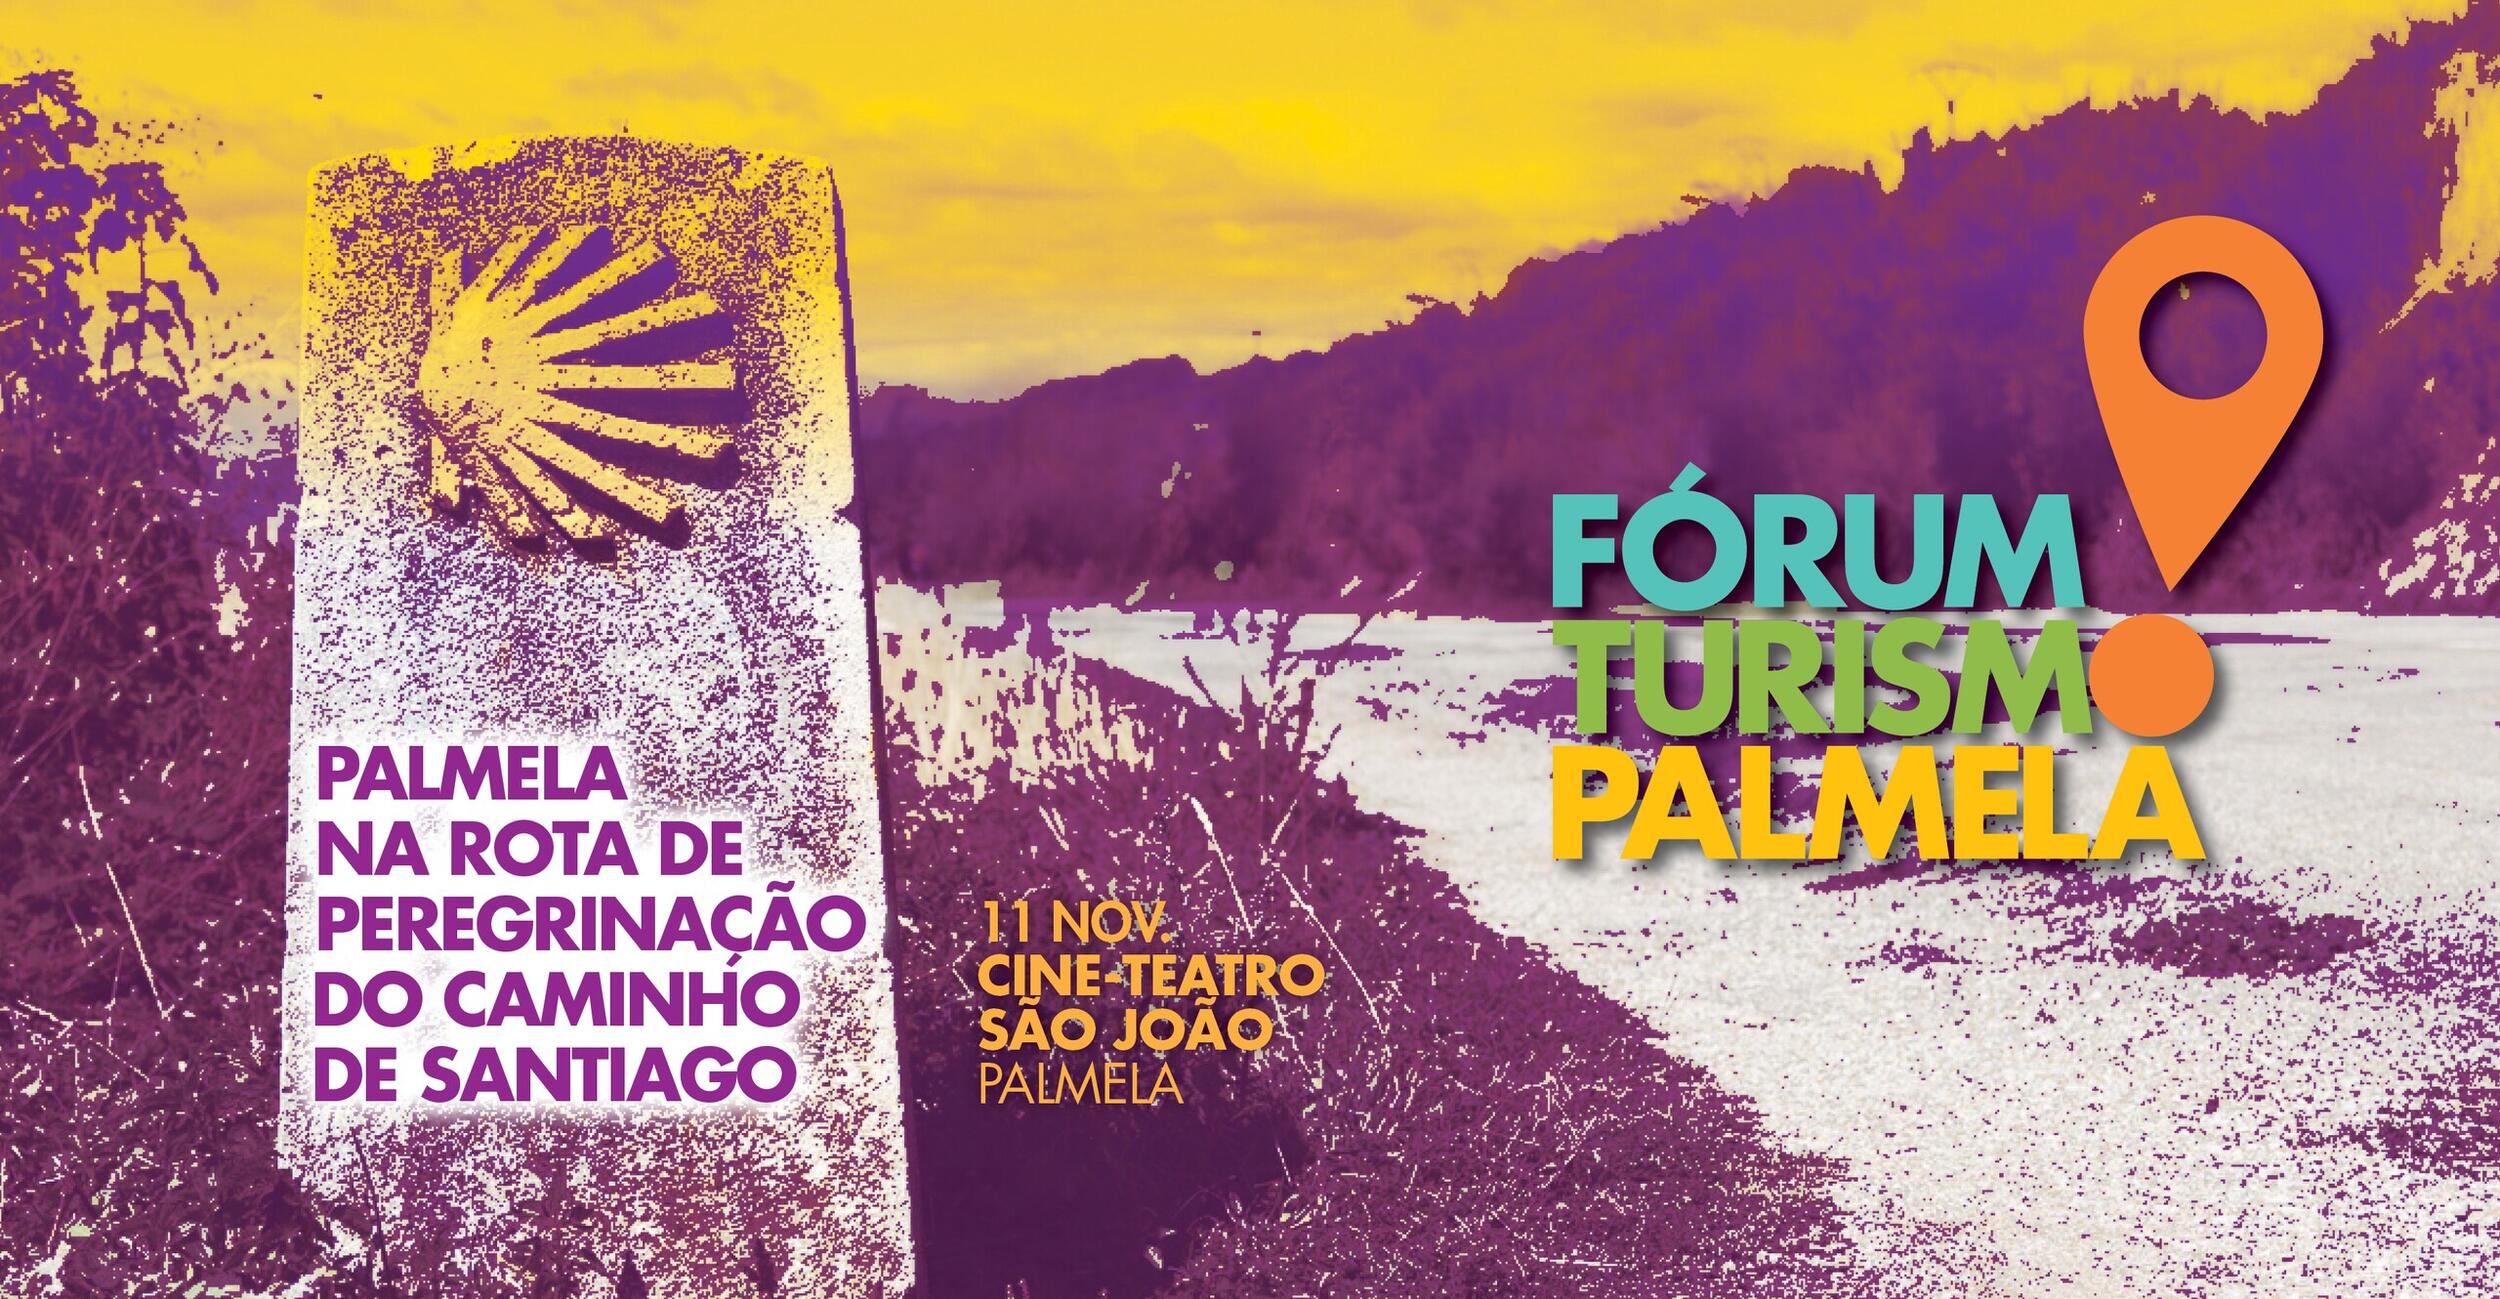 Fórum Turismo Palmela  - ainda se pode inscrever até 9 de novembro!